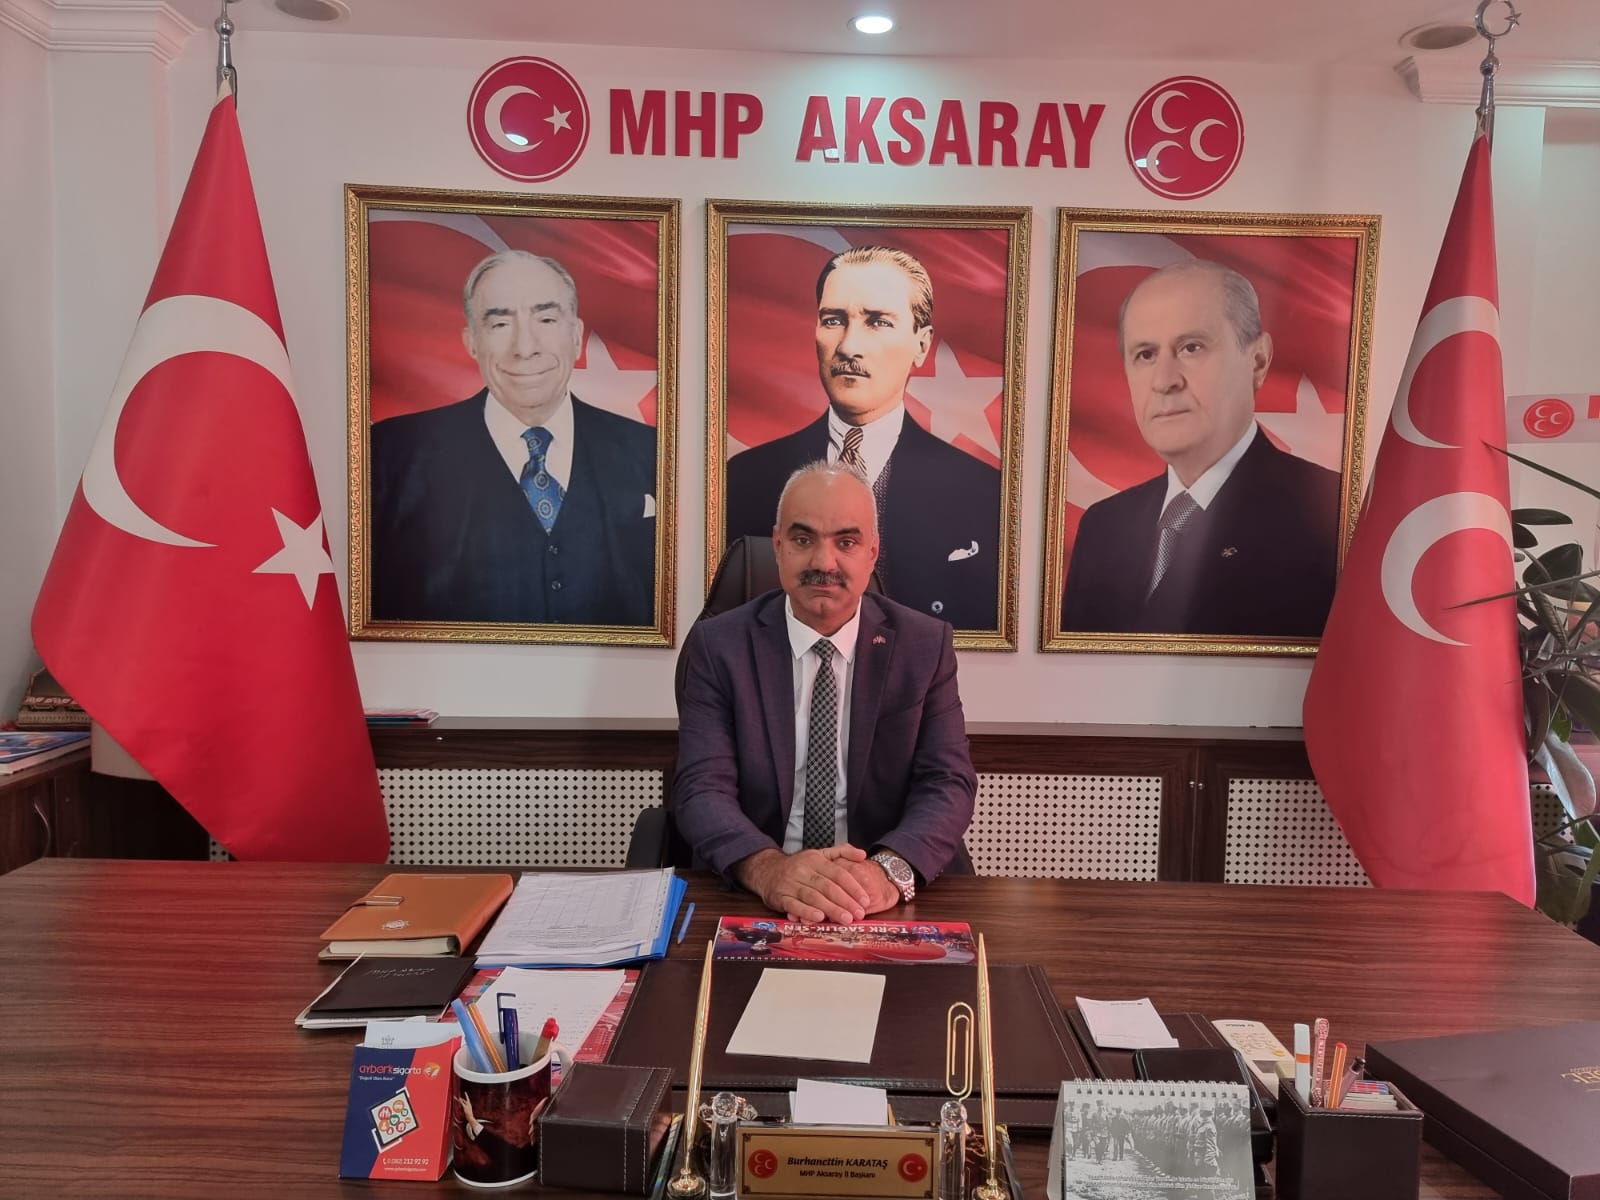 MHP Aksaray İl Başkanı Burhanettin Karataş 19 Ekim Muhtarlar günü kutlama mesajı